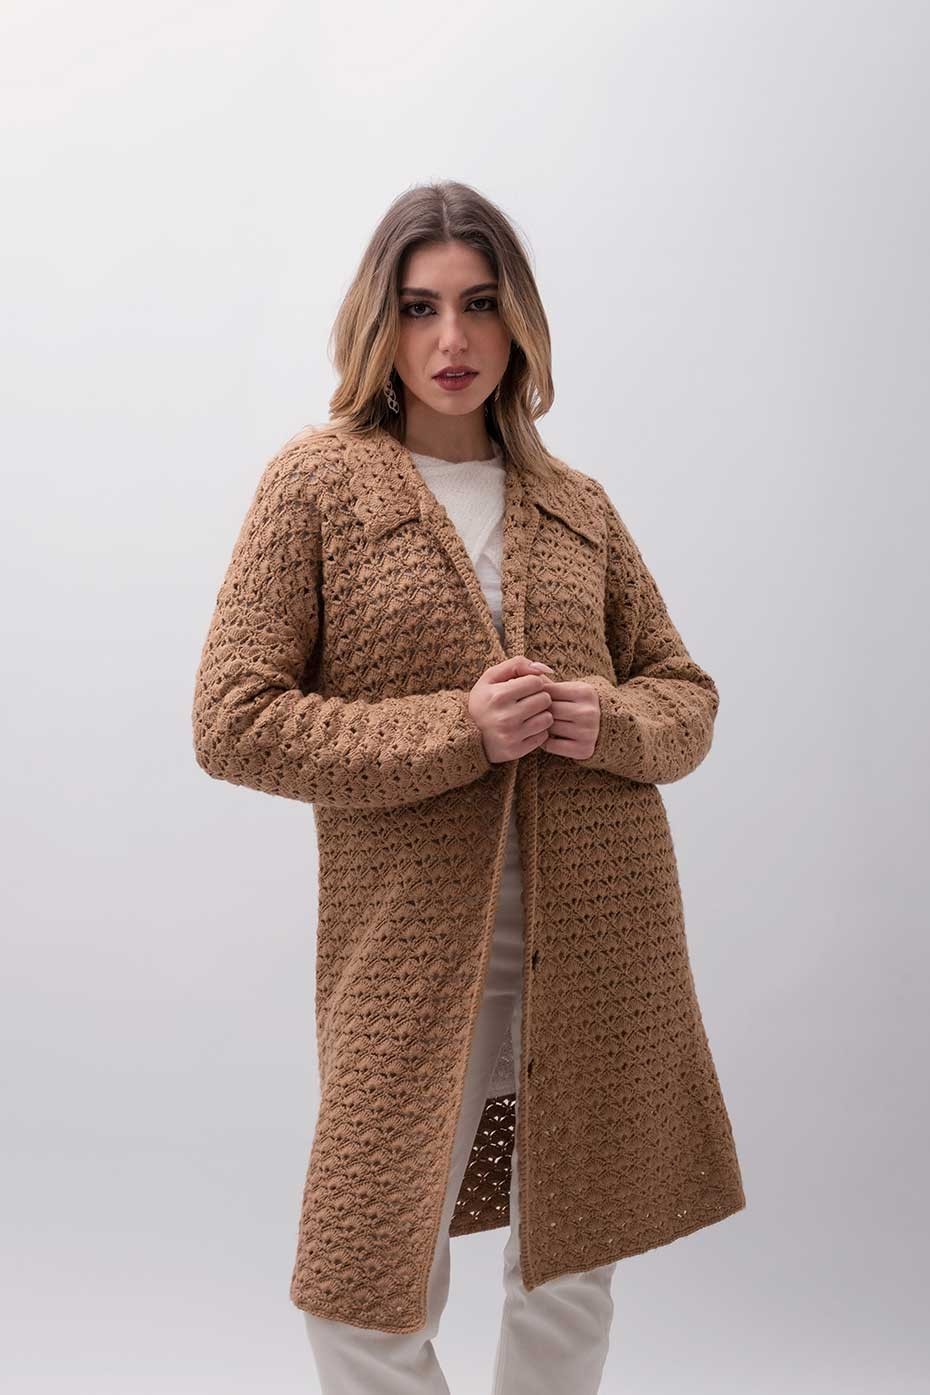 Cappotto lana fatto a mano ad uncinetto crochet Latiano